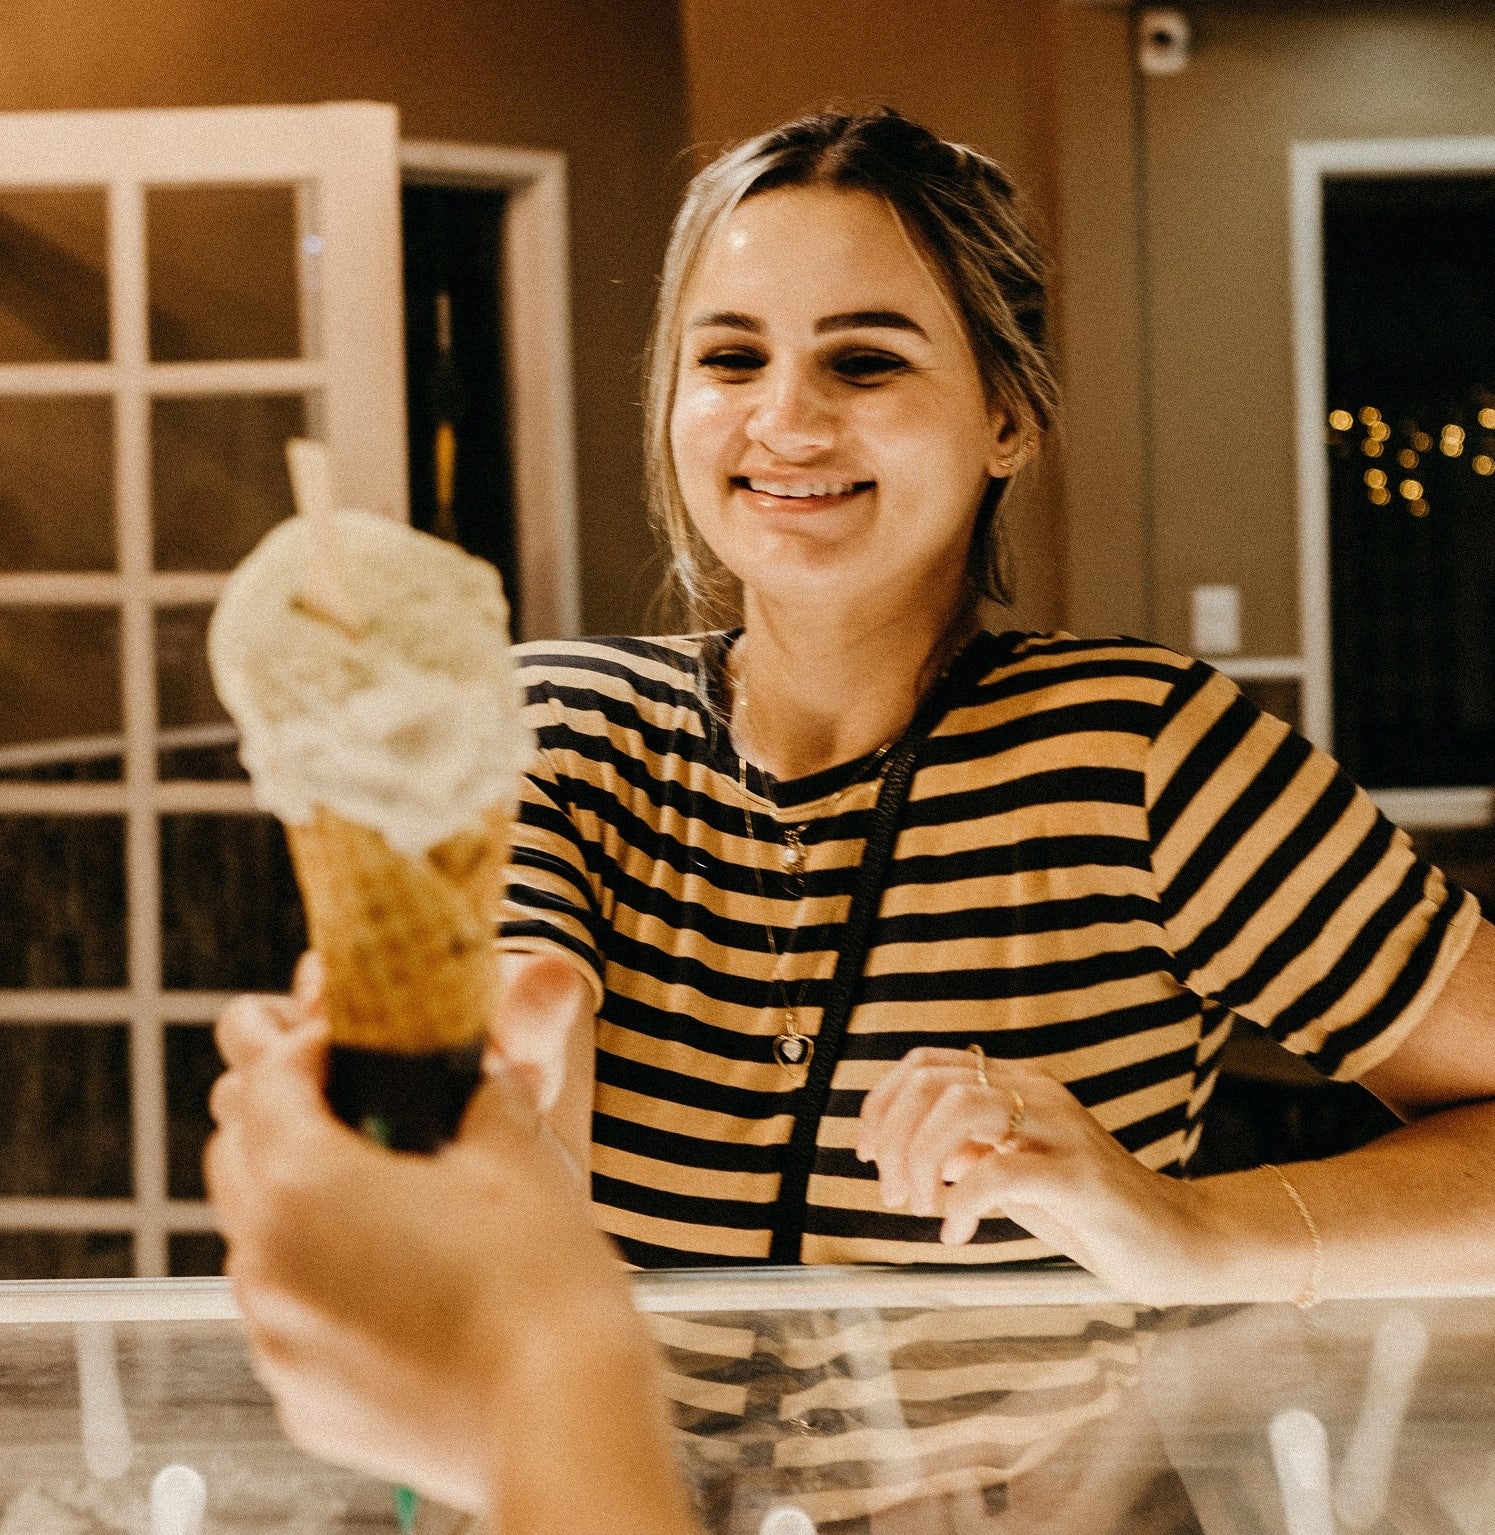 Woman Recieving Ice Cream at Shop